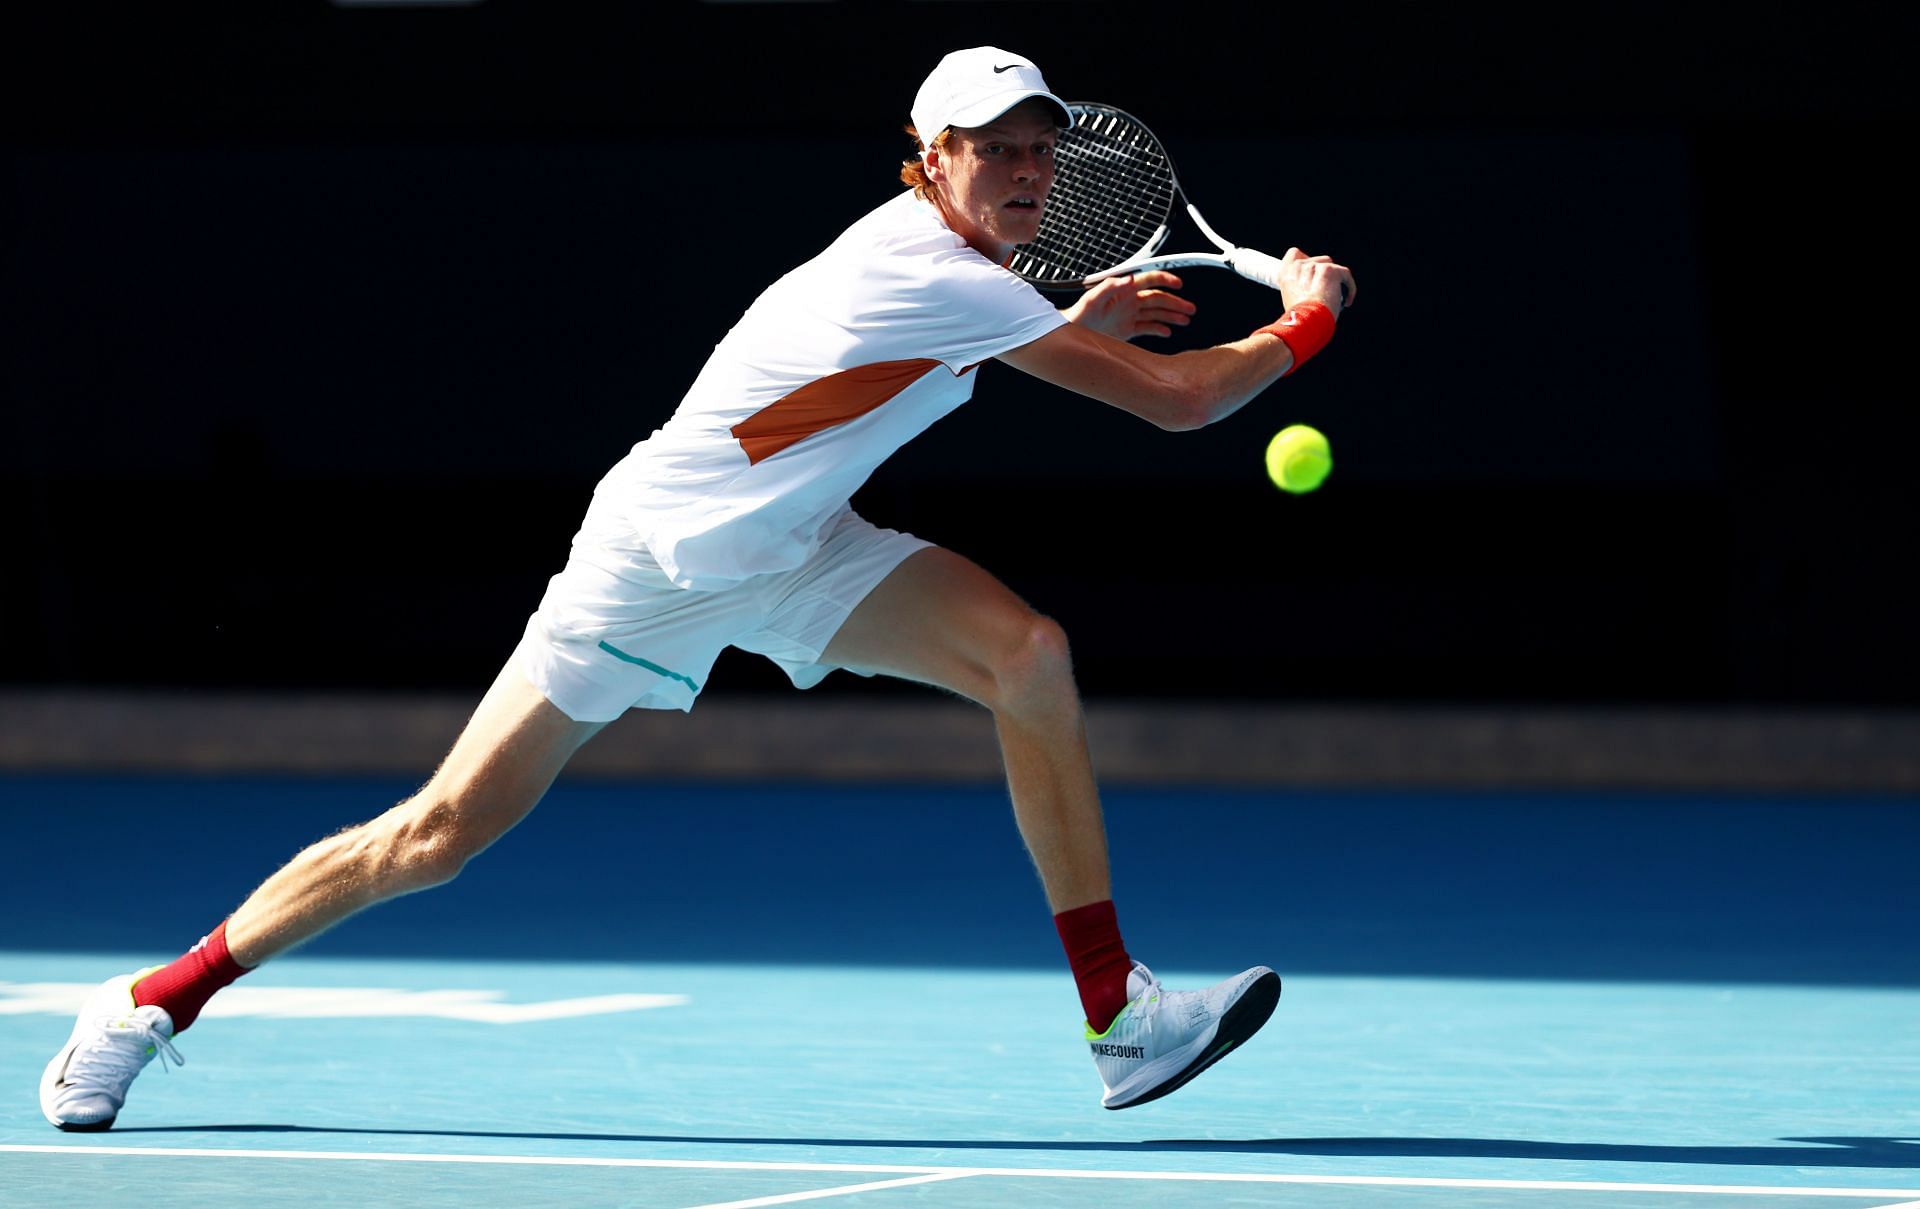 Jannik Sinner at the 2022 Australian Open